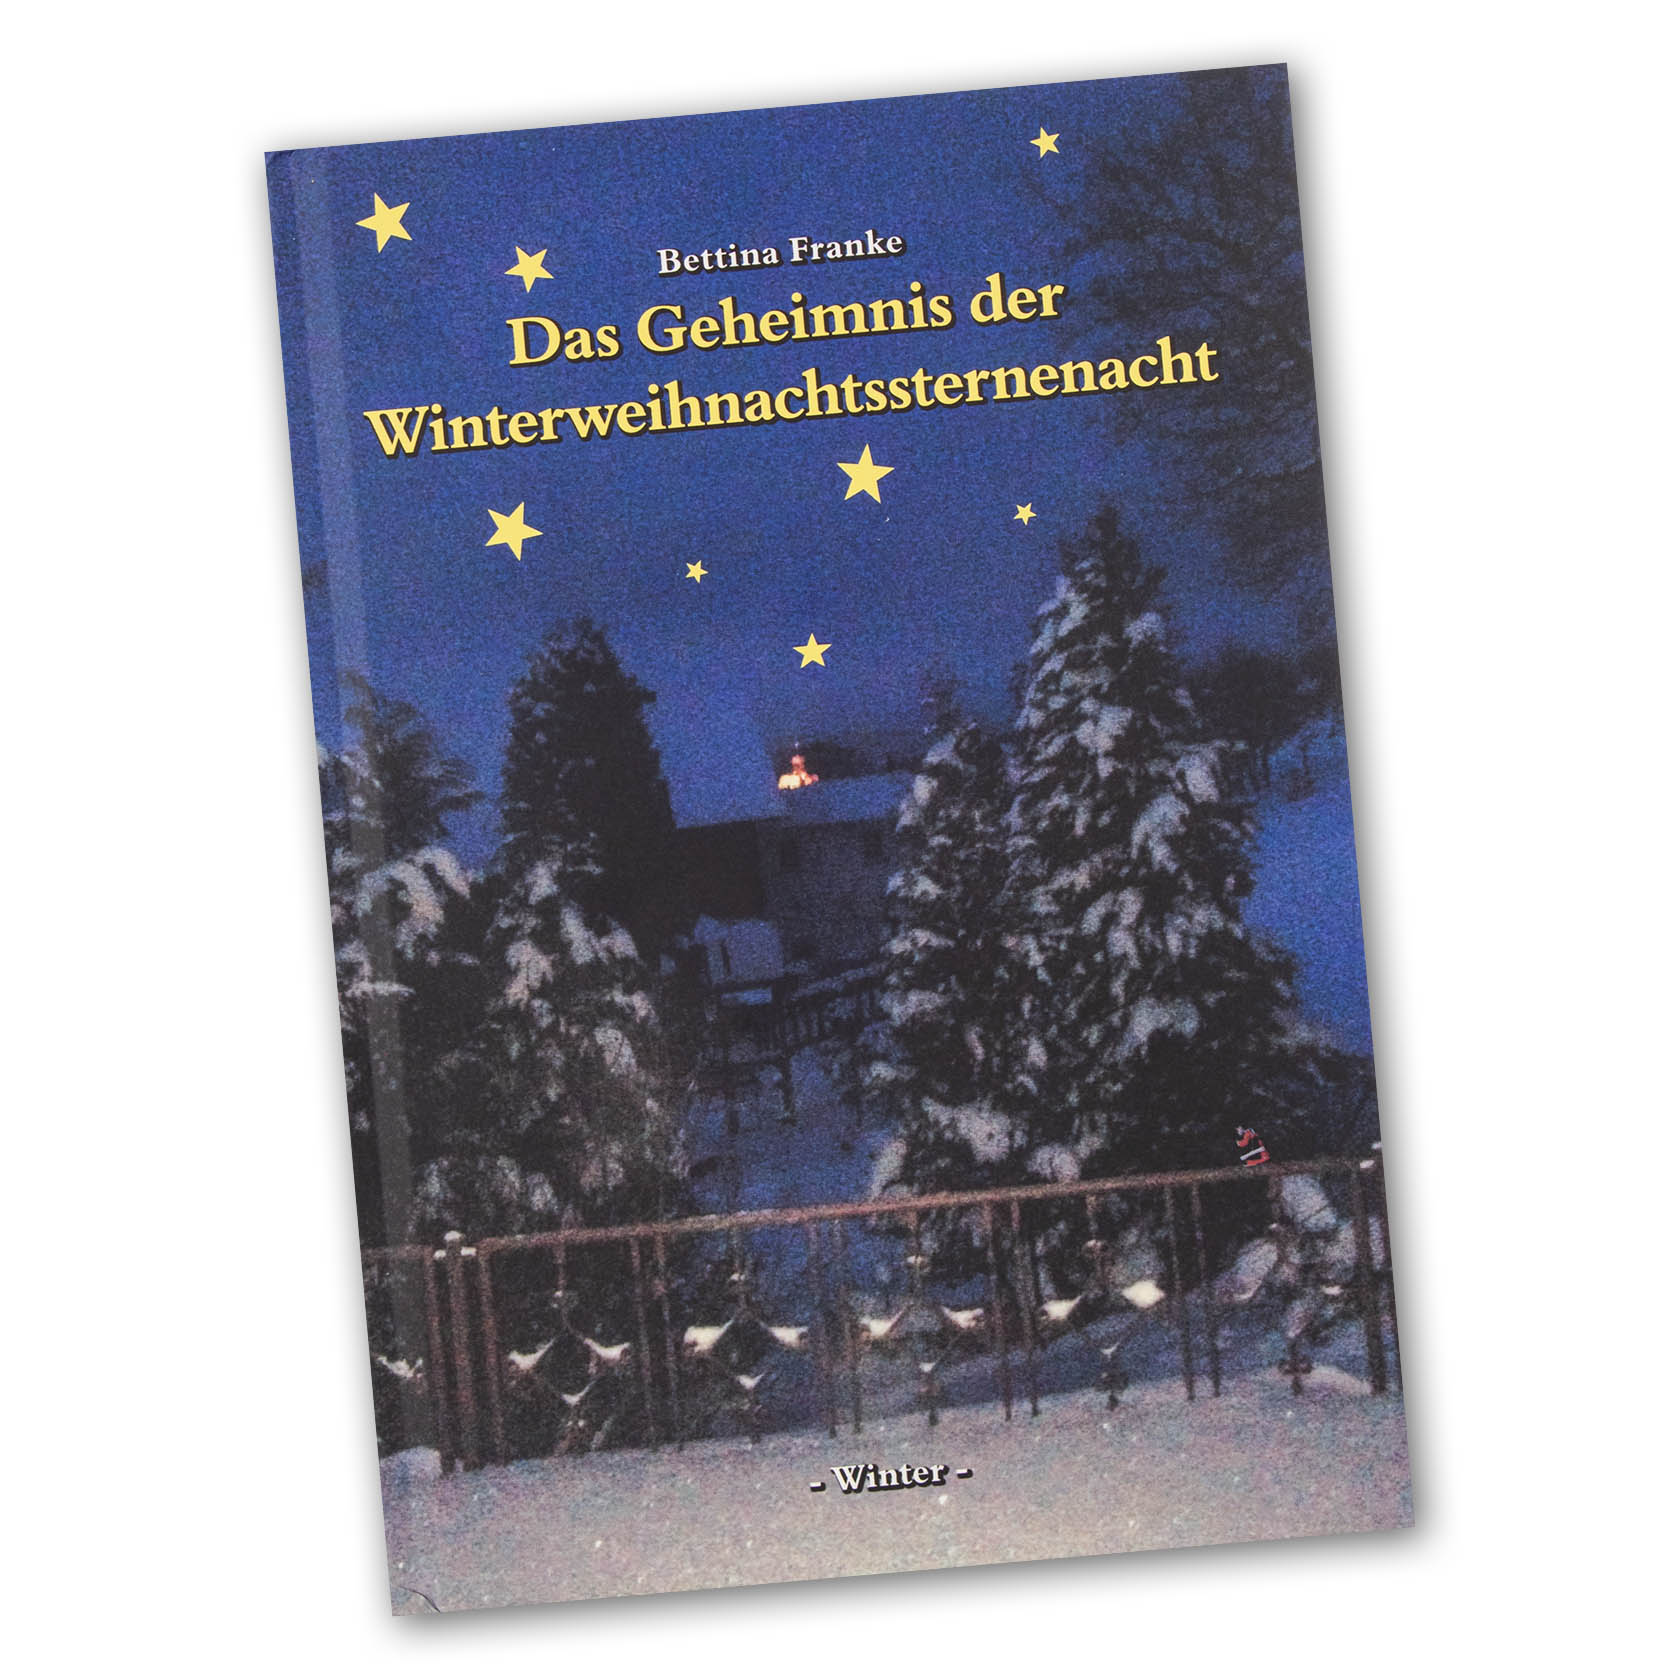 Buch - B. Franke, Das Geheimnis der Winterweihnachtssternennacht -Winter- im Dregeno Online Shop günstig kaufen